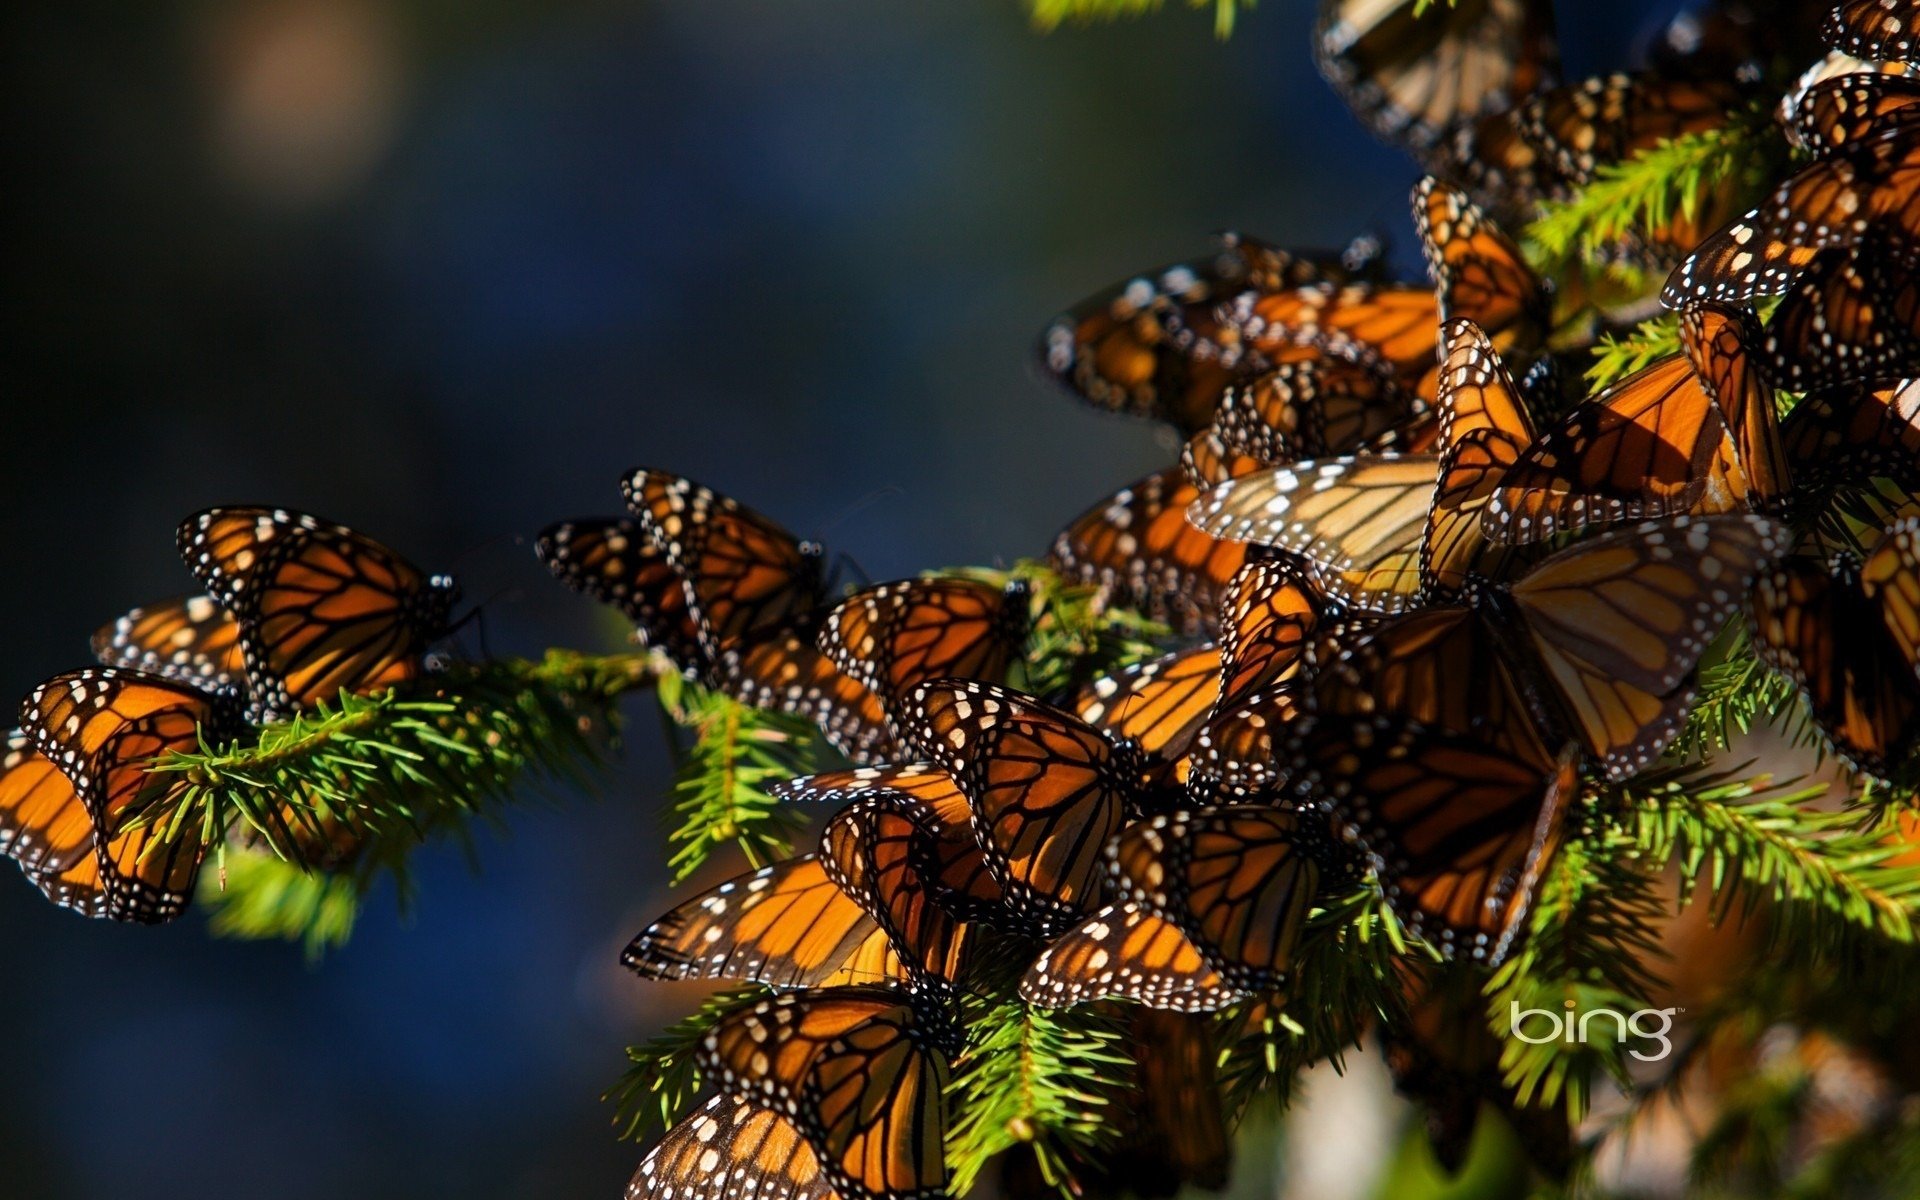 Очень много обой. Пихта Священная бабочка Монарх. Долина бабочек Родос. Биосферный заповедник бабочки Монарх. Много бабочек.